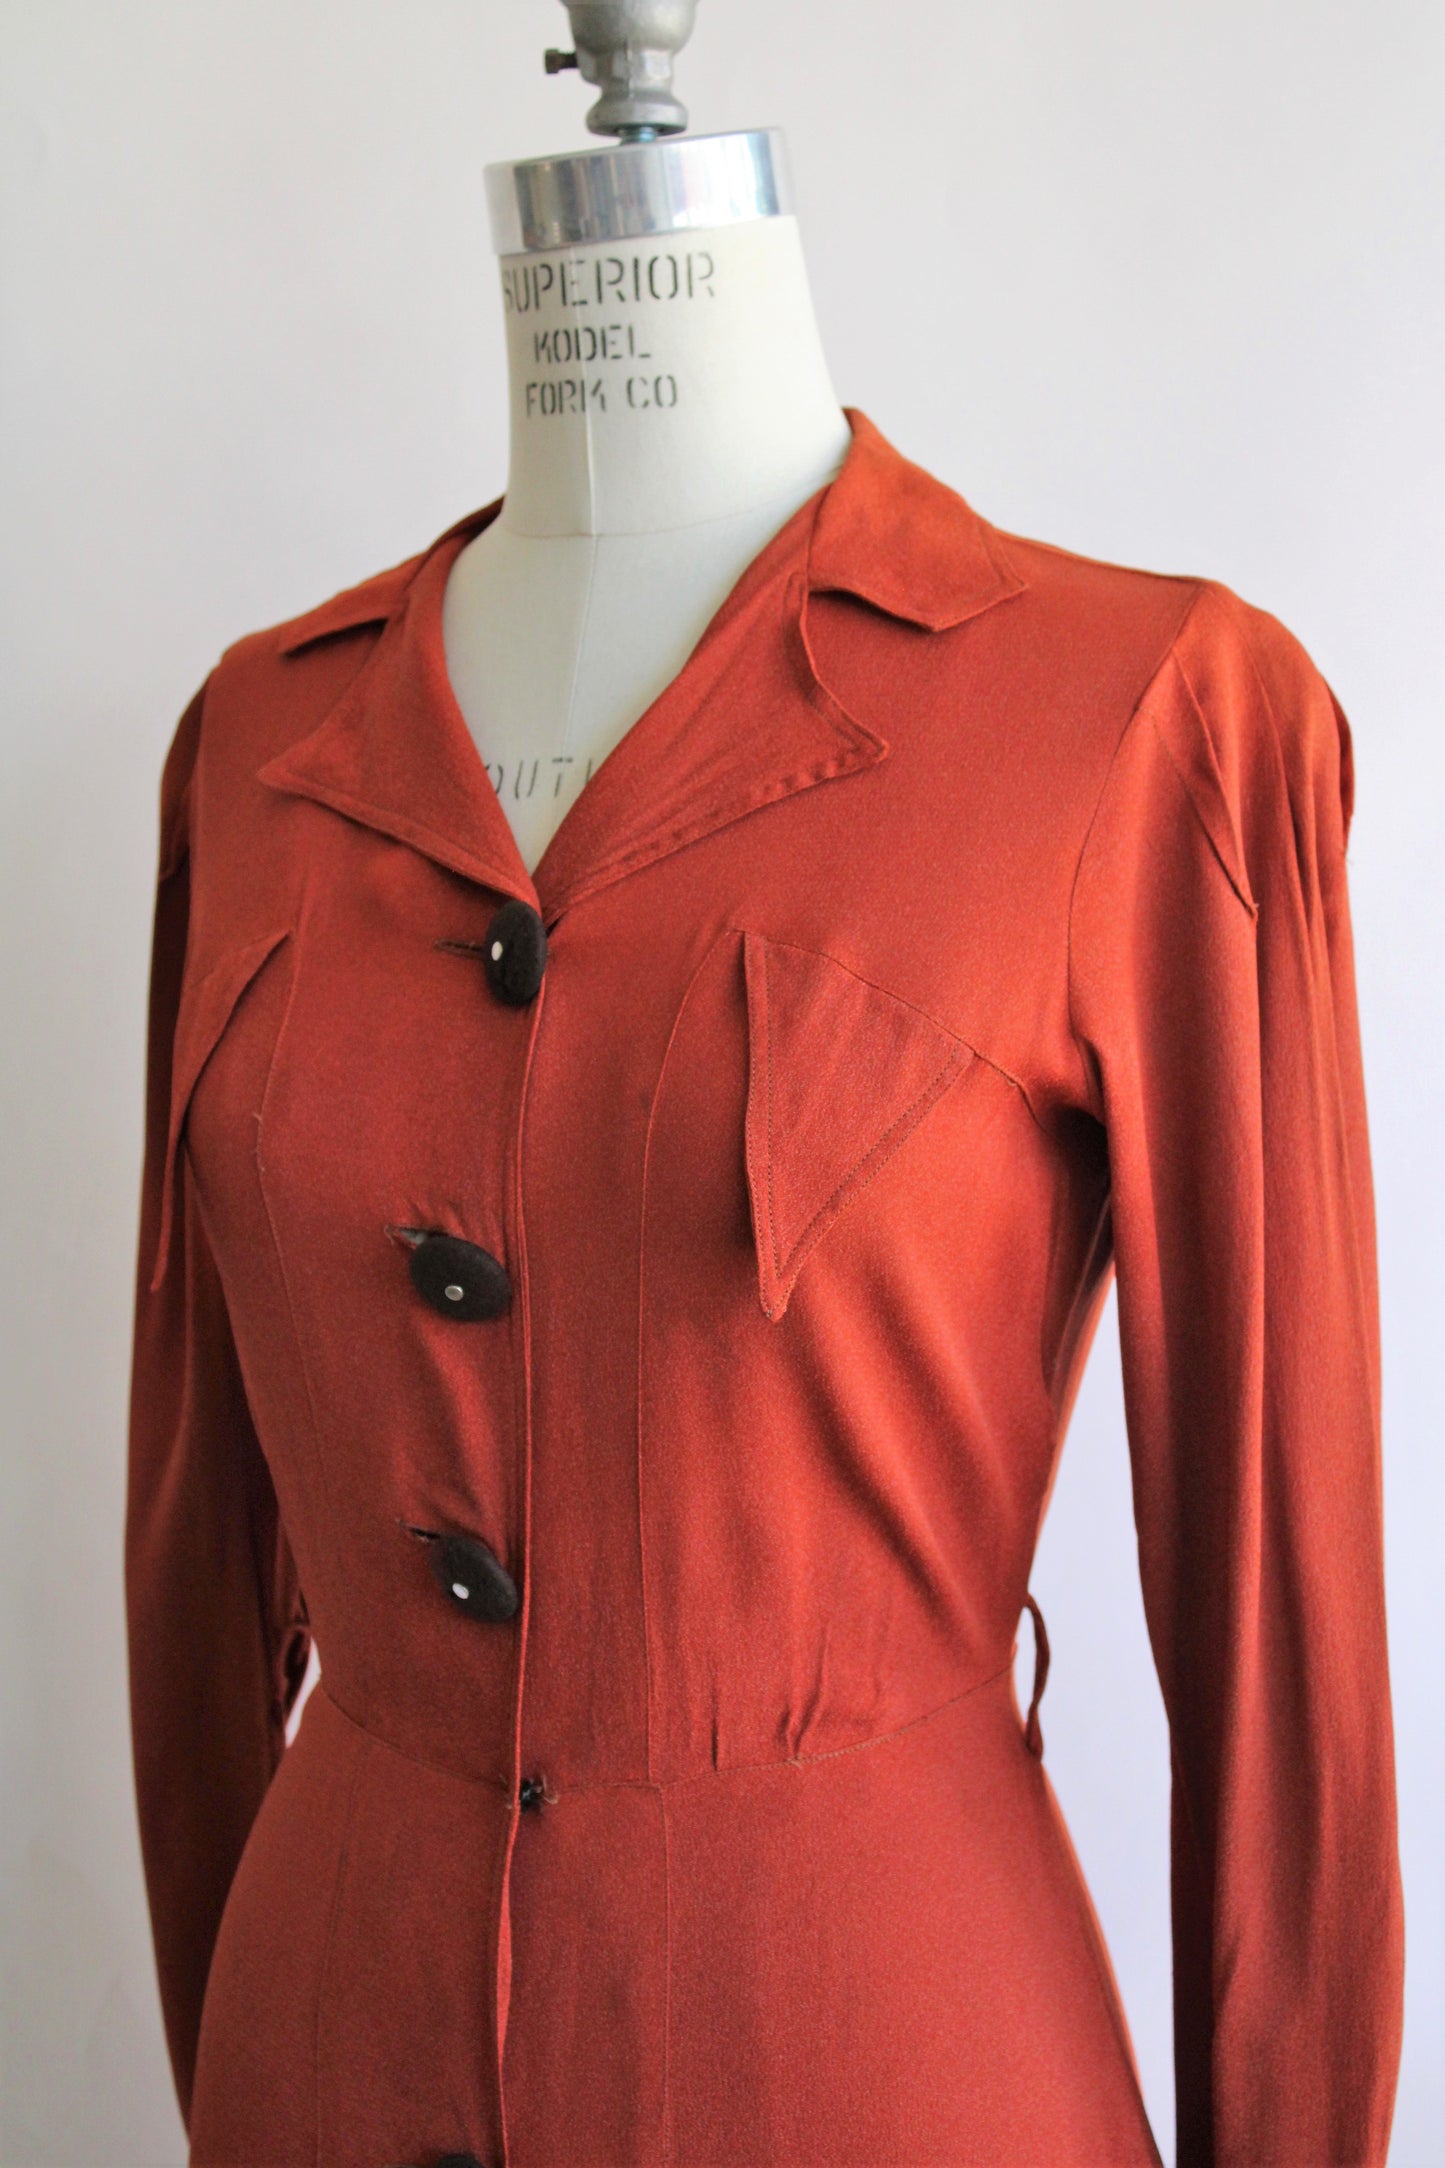 Vintage 1940s Rust Orange Rayon Dress